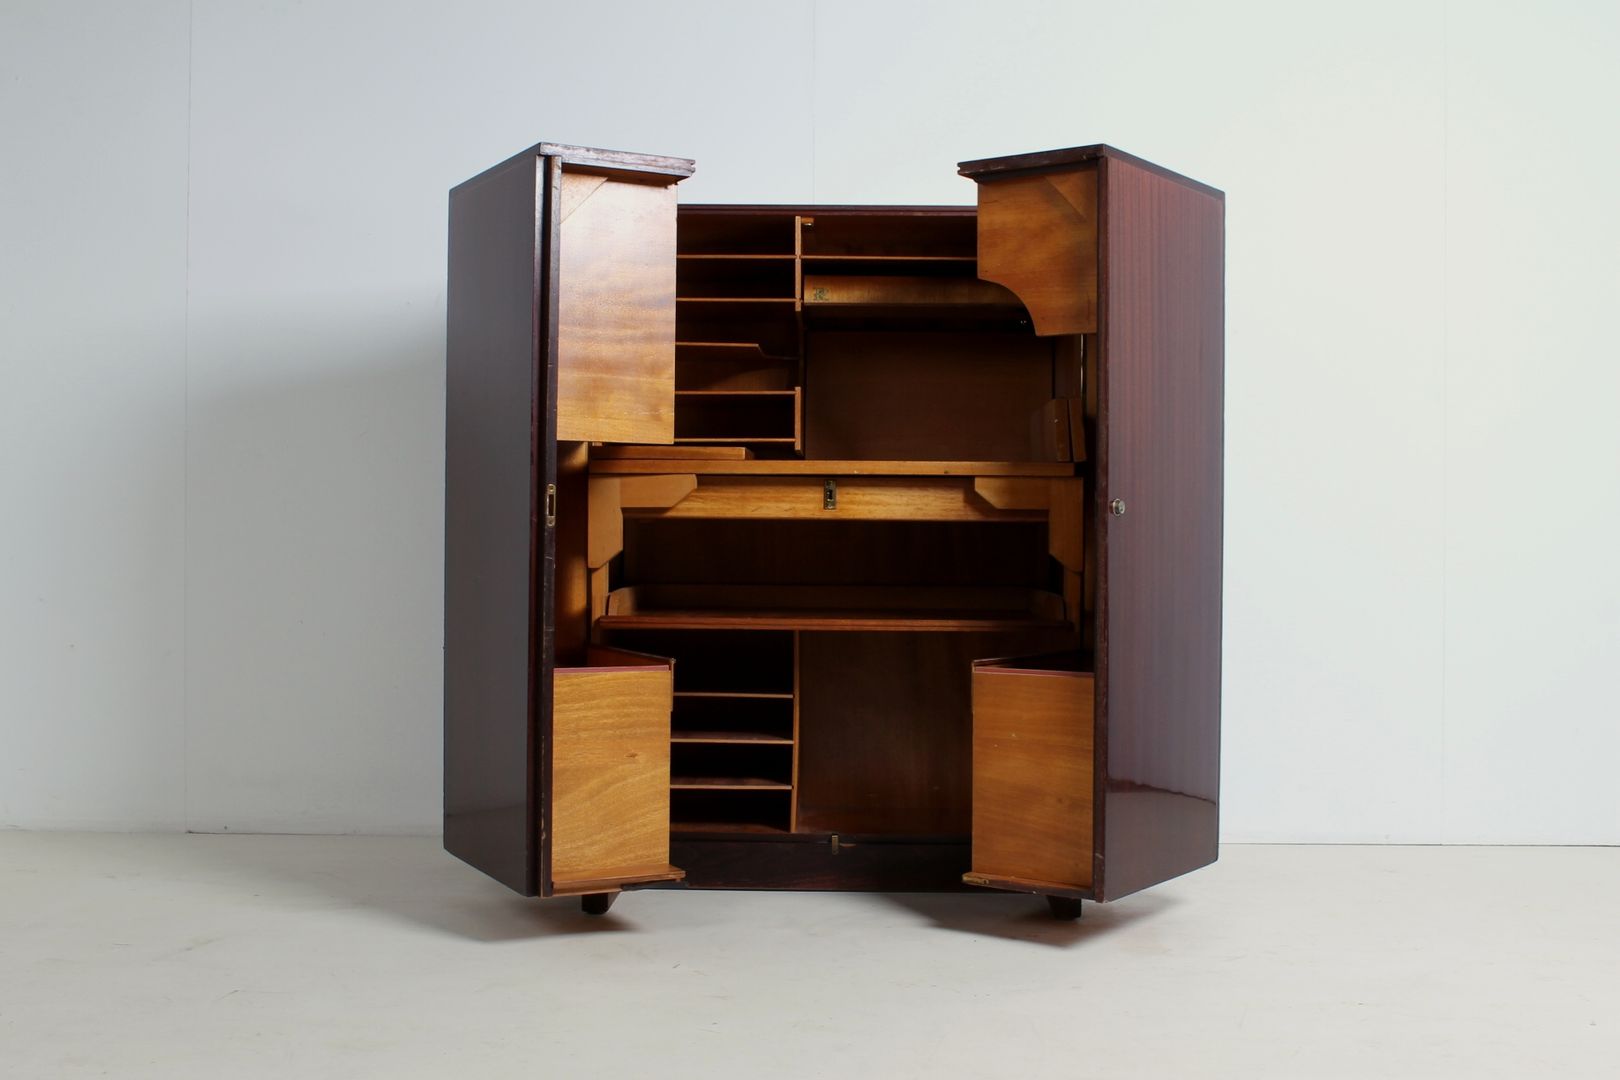 Möbel/Schreibbüro von Mummenthaler & Meier., func. functional furniture func. functional furniture مكتب عمل أو دراسة Desks